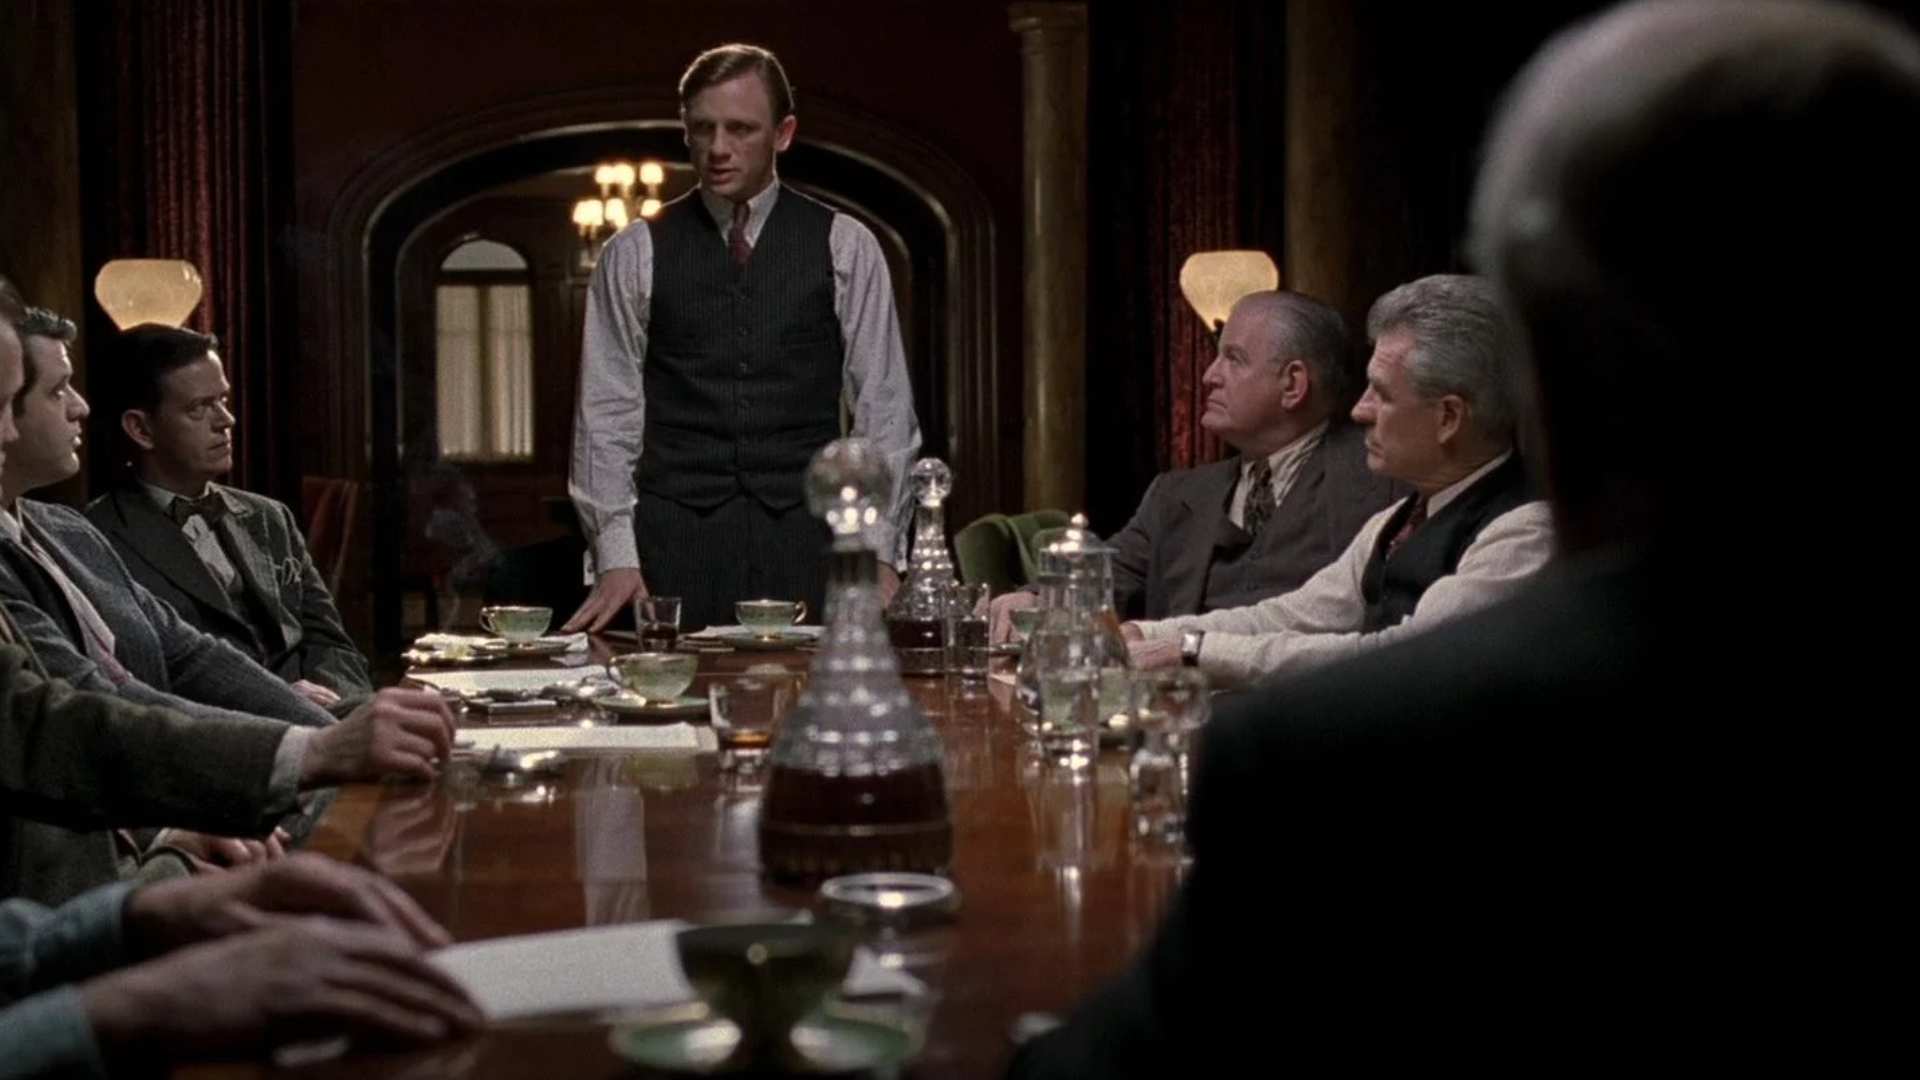 دنیل کریگ در حال صحبت در یک جلسه در فیلم Road to Perdition